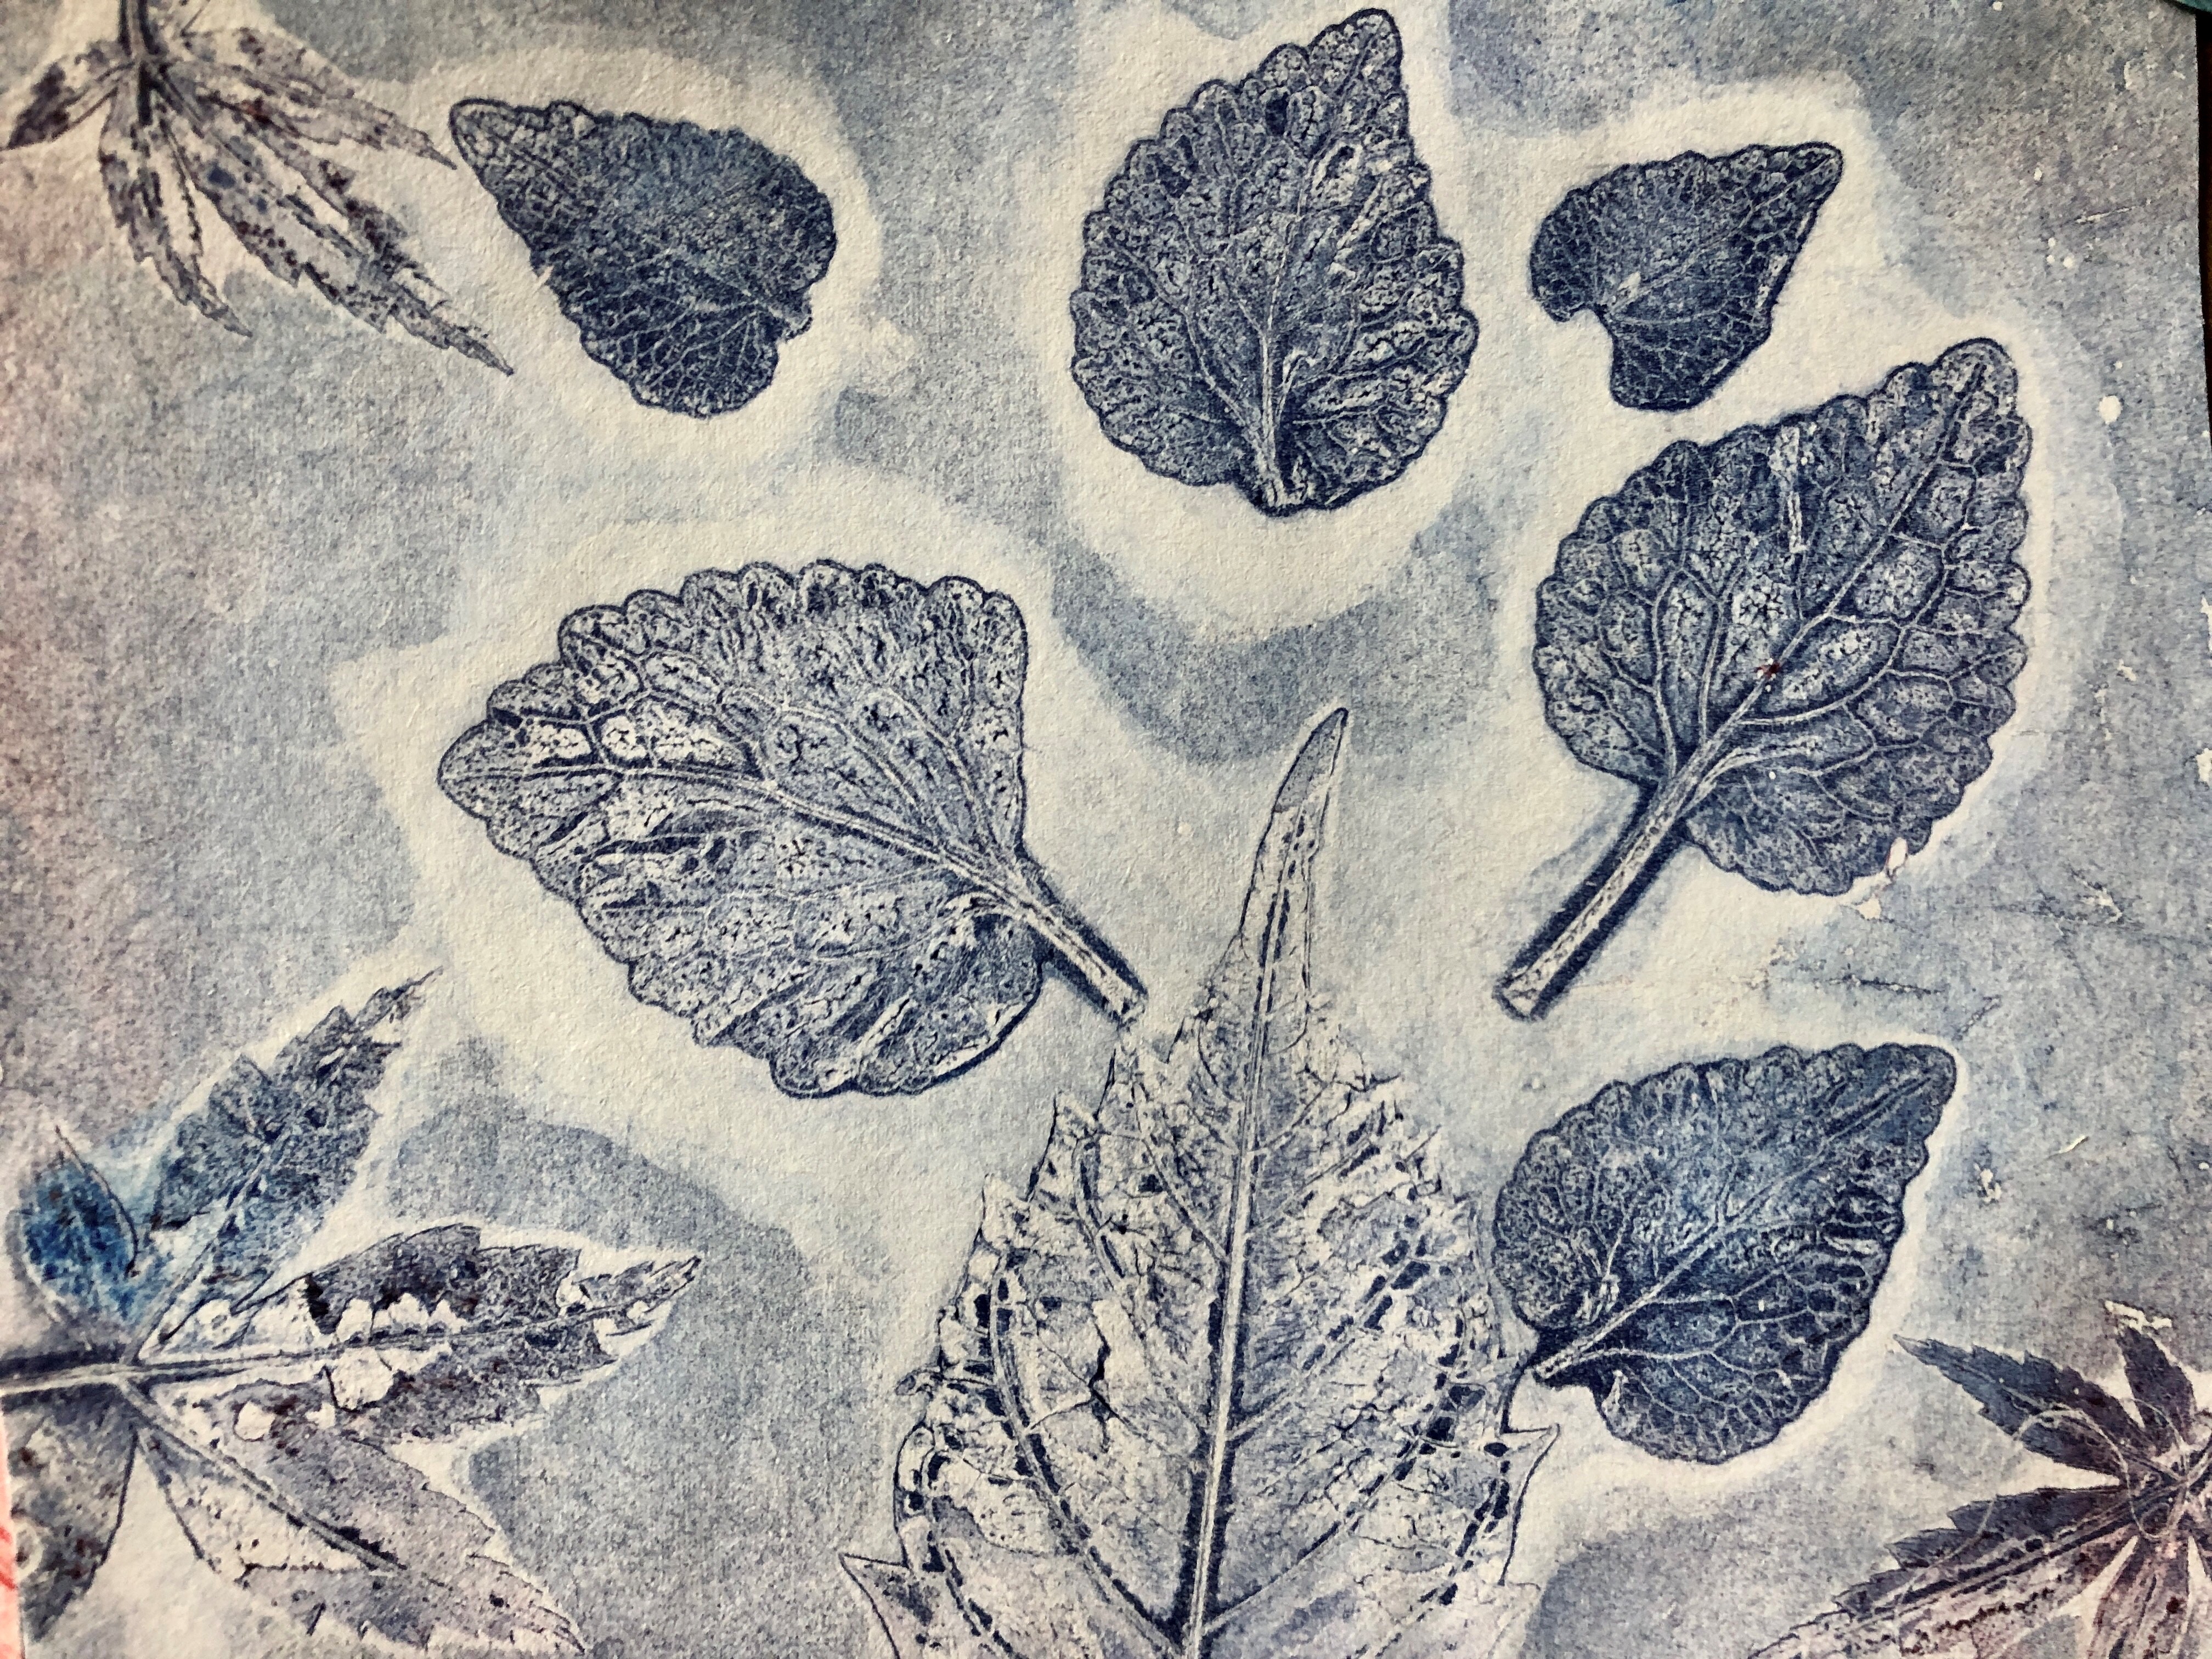 gelatin prints of leaves